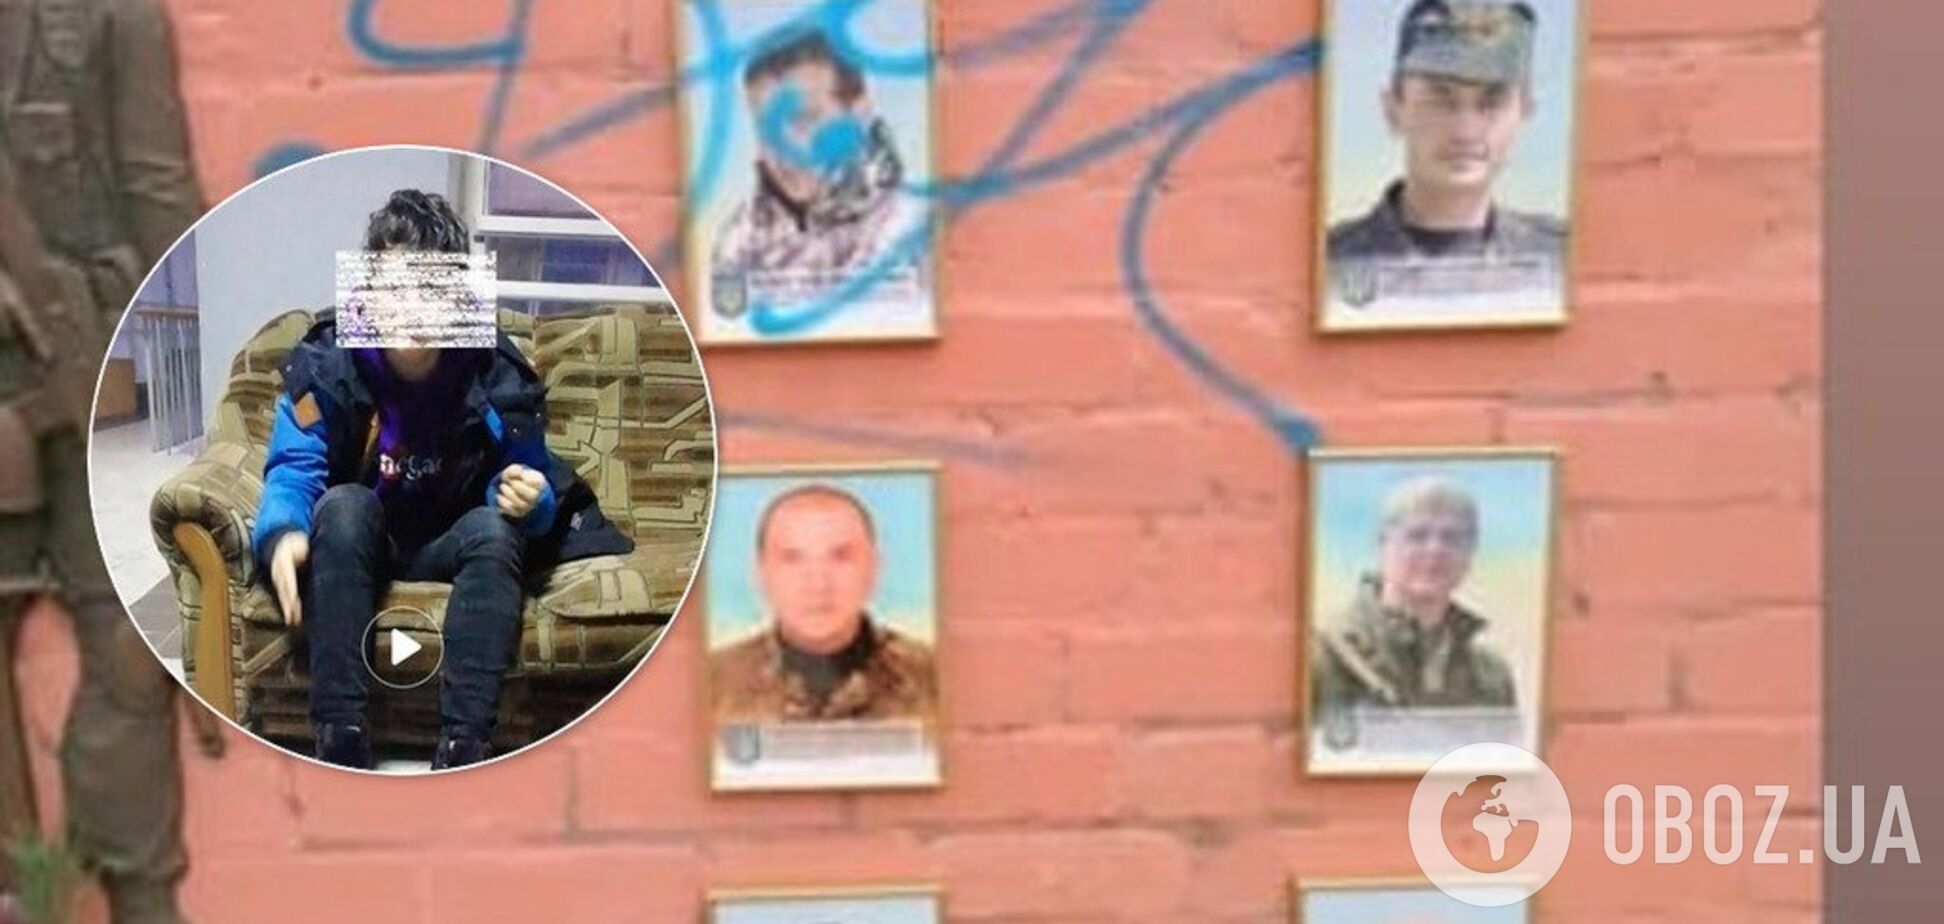 'Помріть, чорти': у Черкасах підліток осквернив меморіал загиблим Героям. Фото